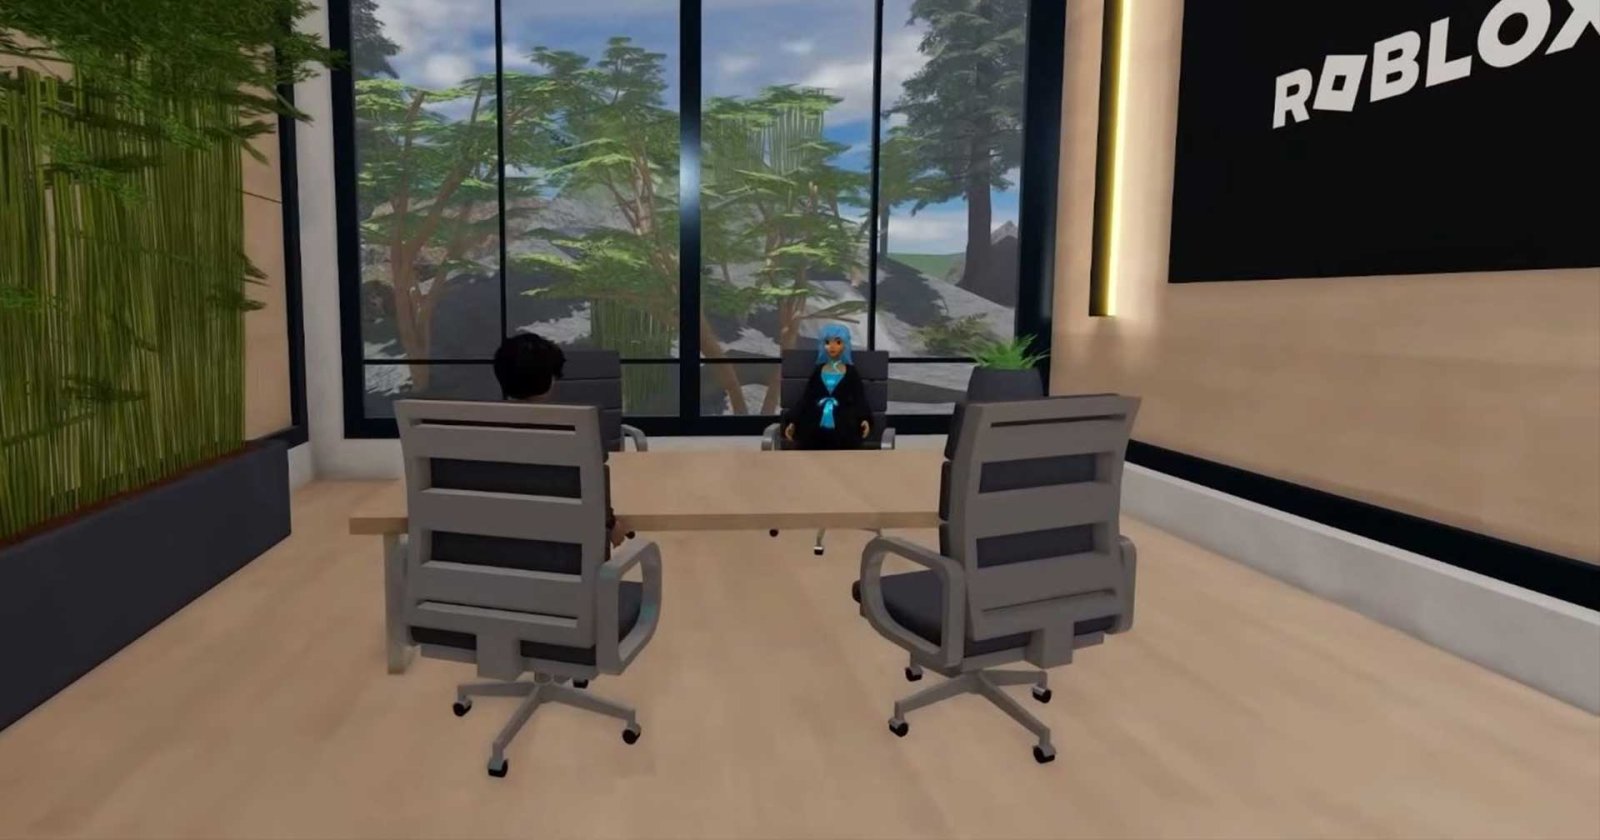 Roblox จะใช้เกมตัวเองเป็นห้องสัมภาษณ์ผู้สมัครเข้าทำงาน